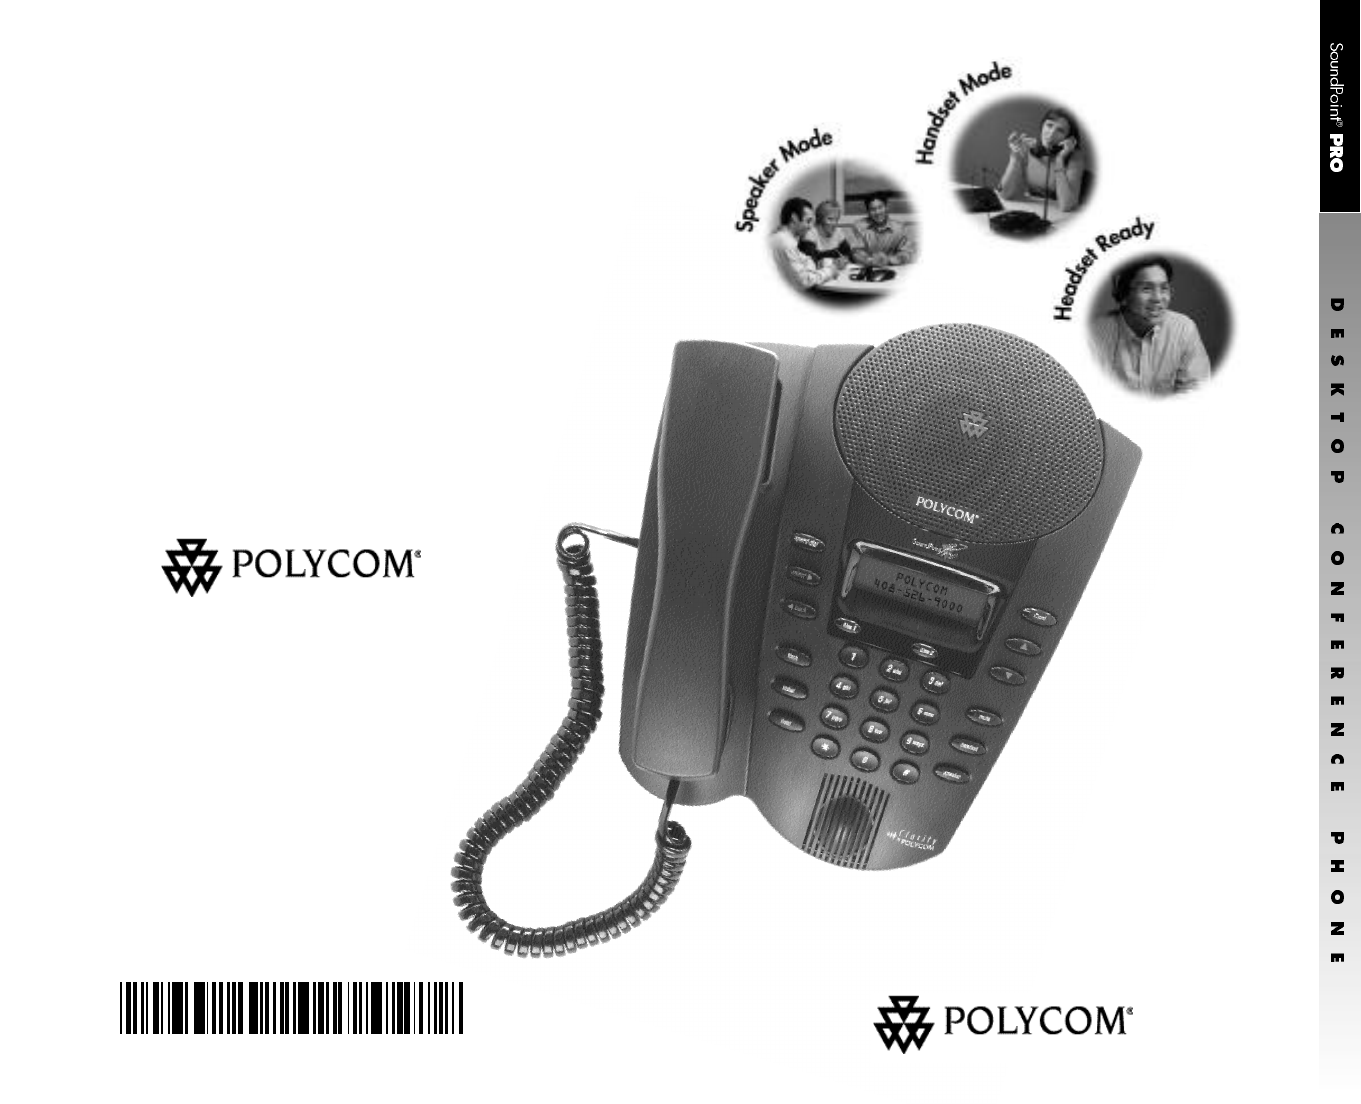 Polycom Telephone SE-220 User Guide | ManualsOnline.com